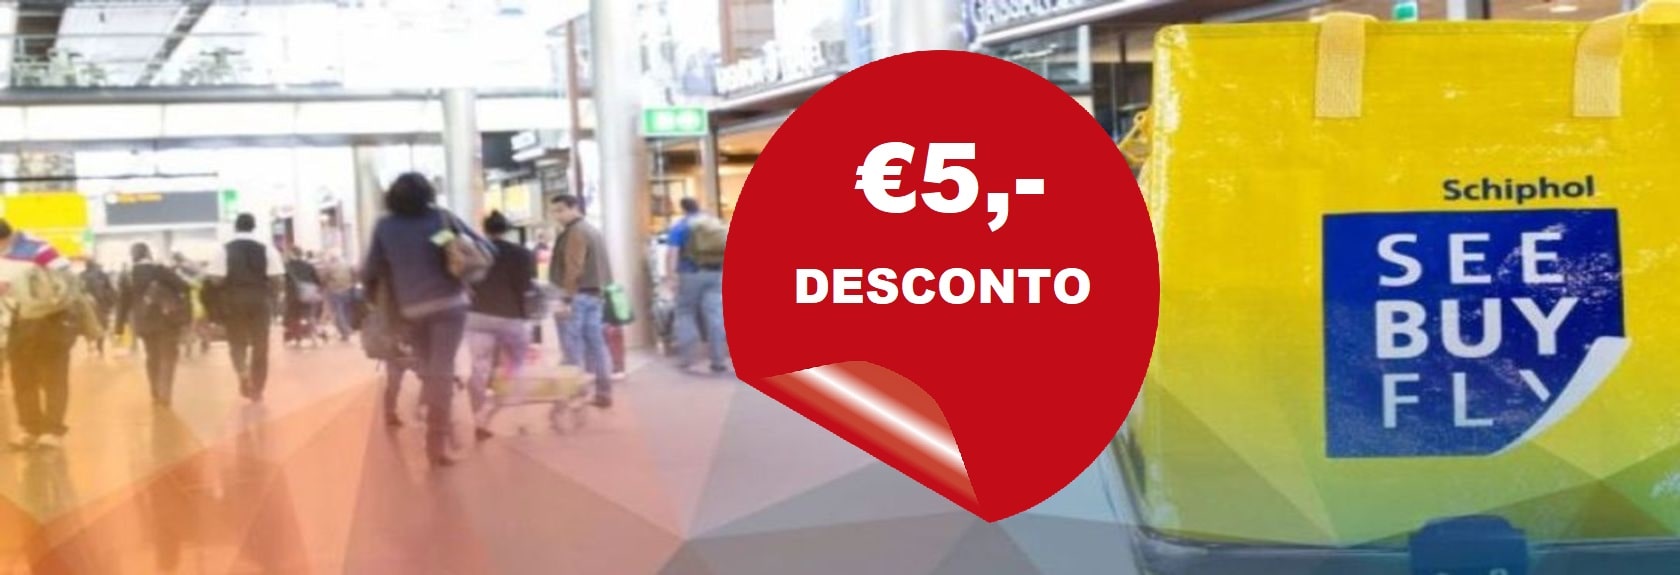 Obter um desconto de 5 euros com See Buy Fly